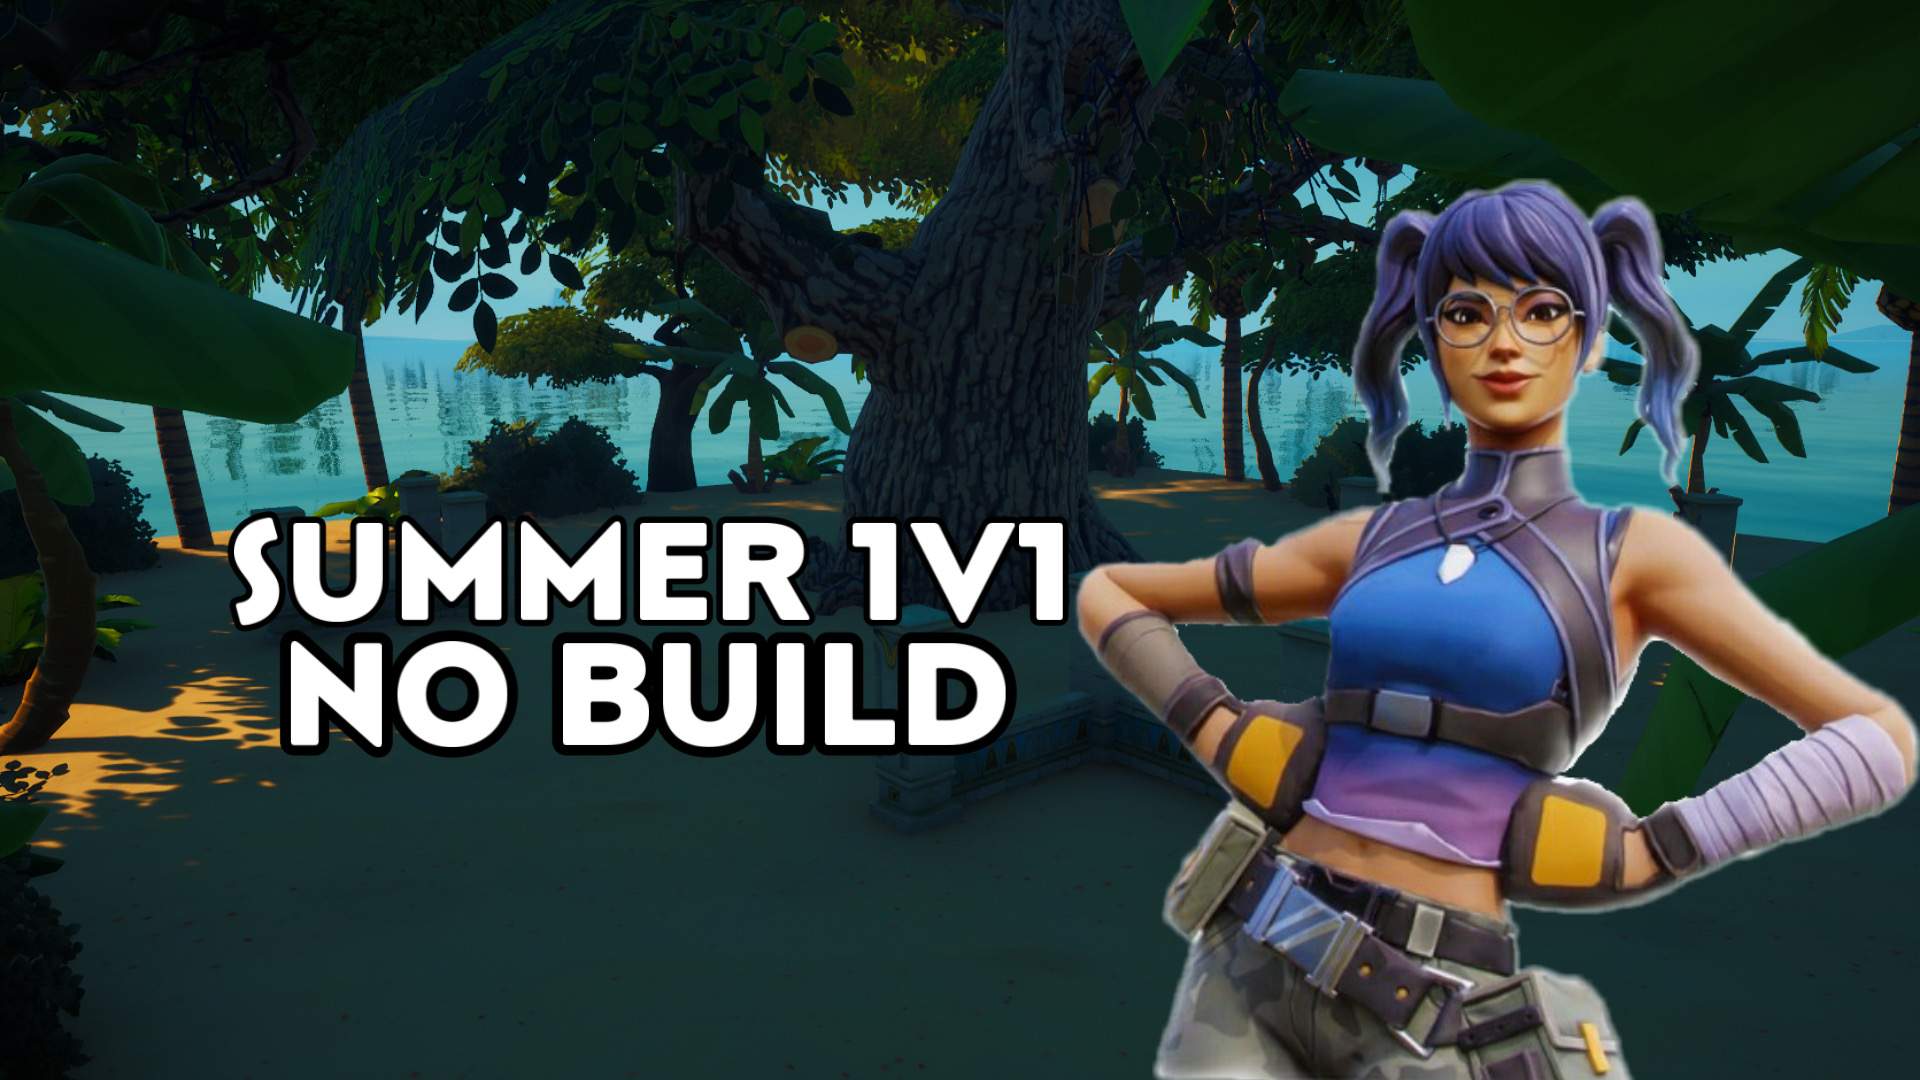 Summer 1V1 no build